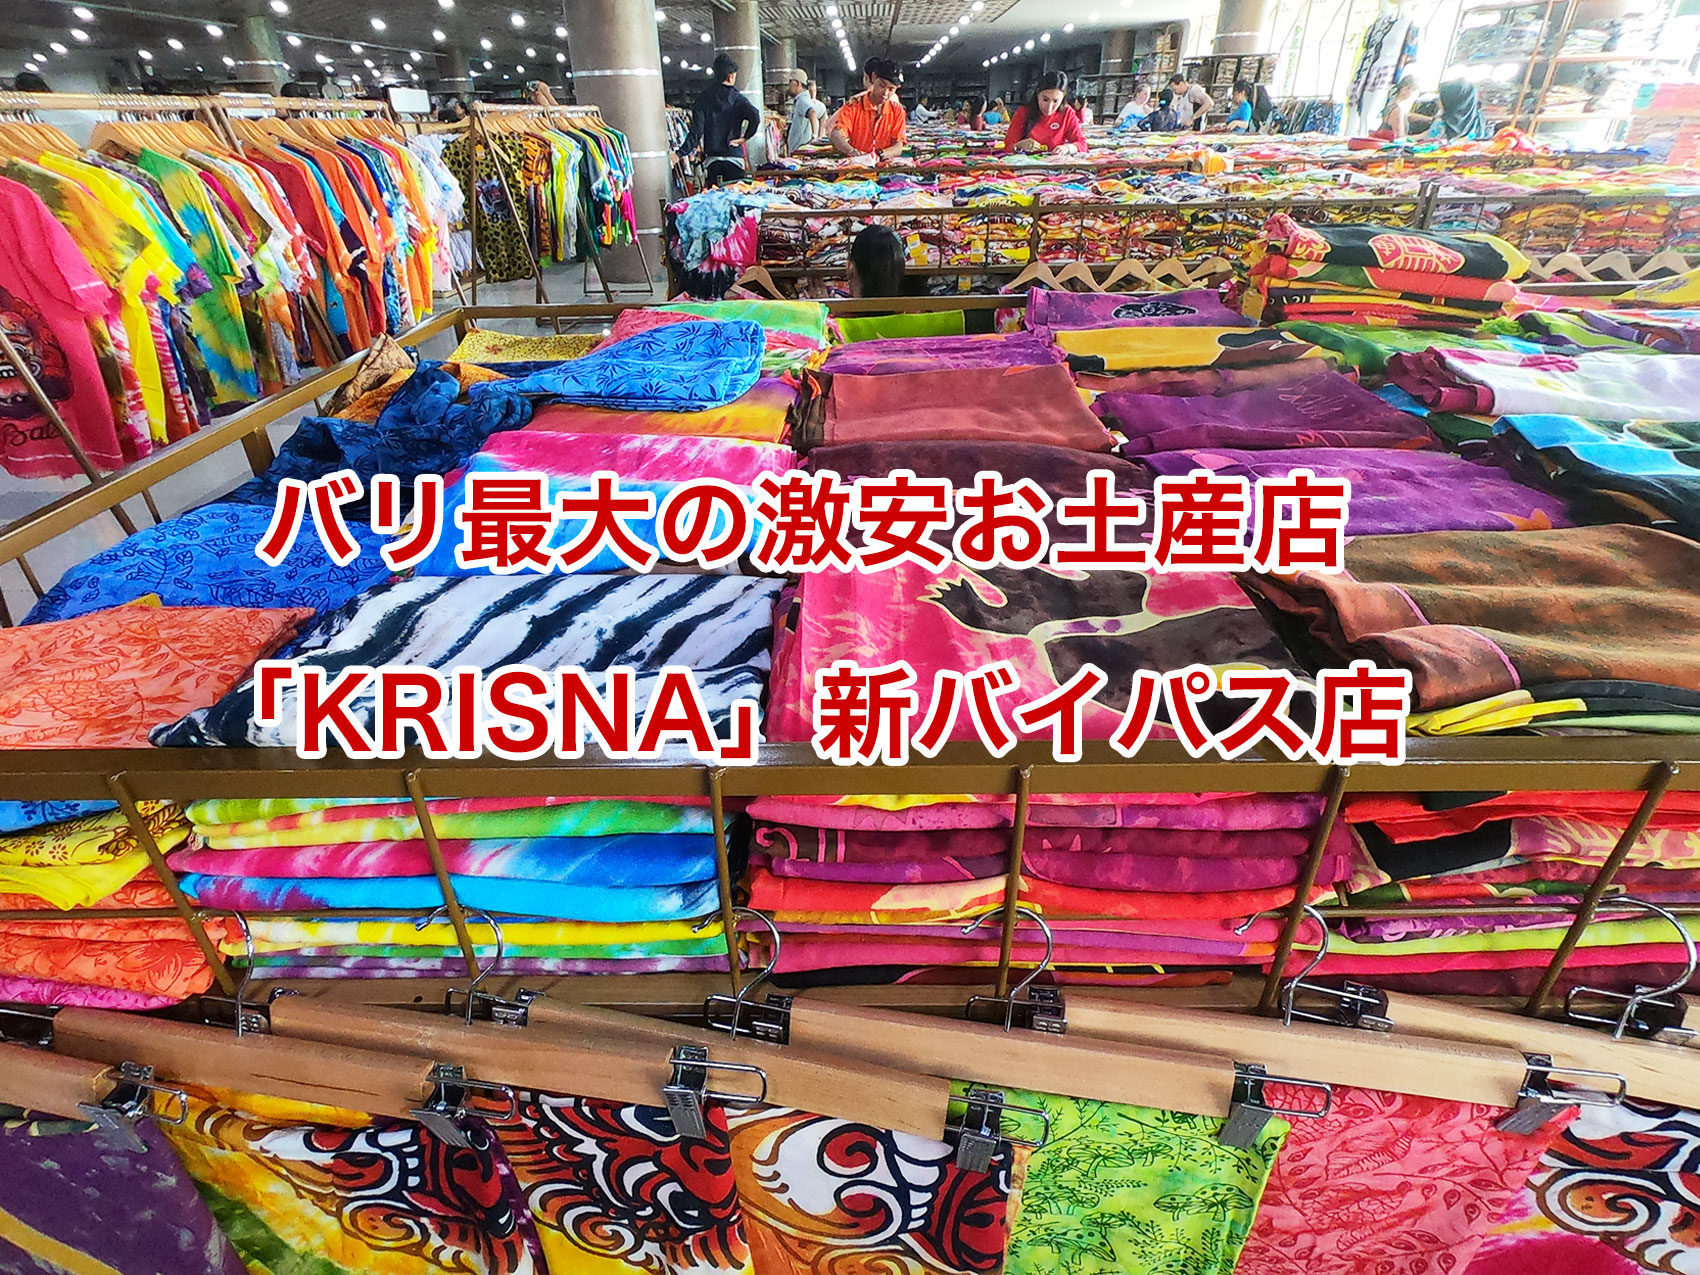 バリ島の激安ローカルお土産屋「KRISNA」の新バイパス店を紹介